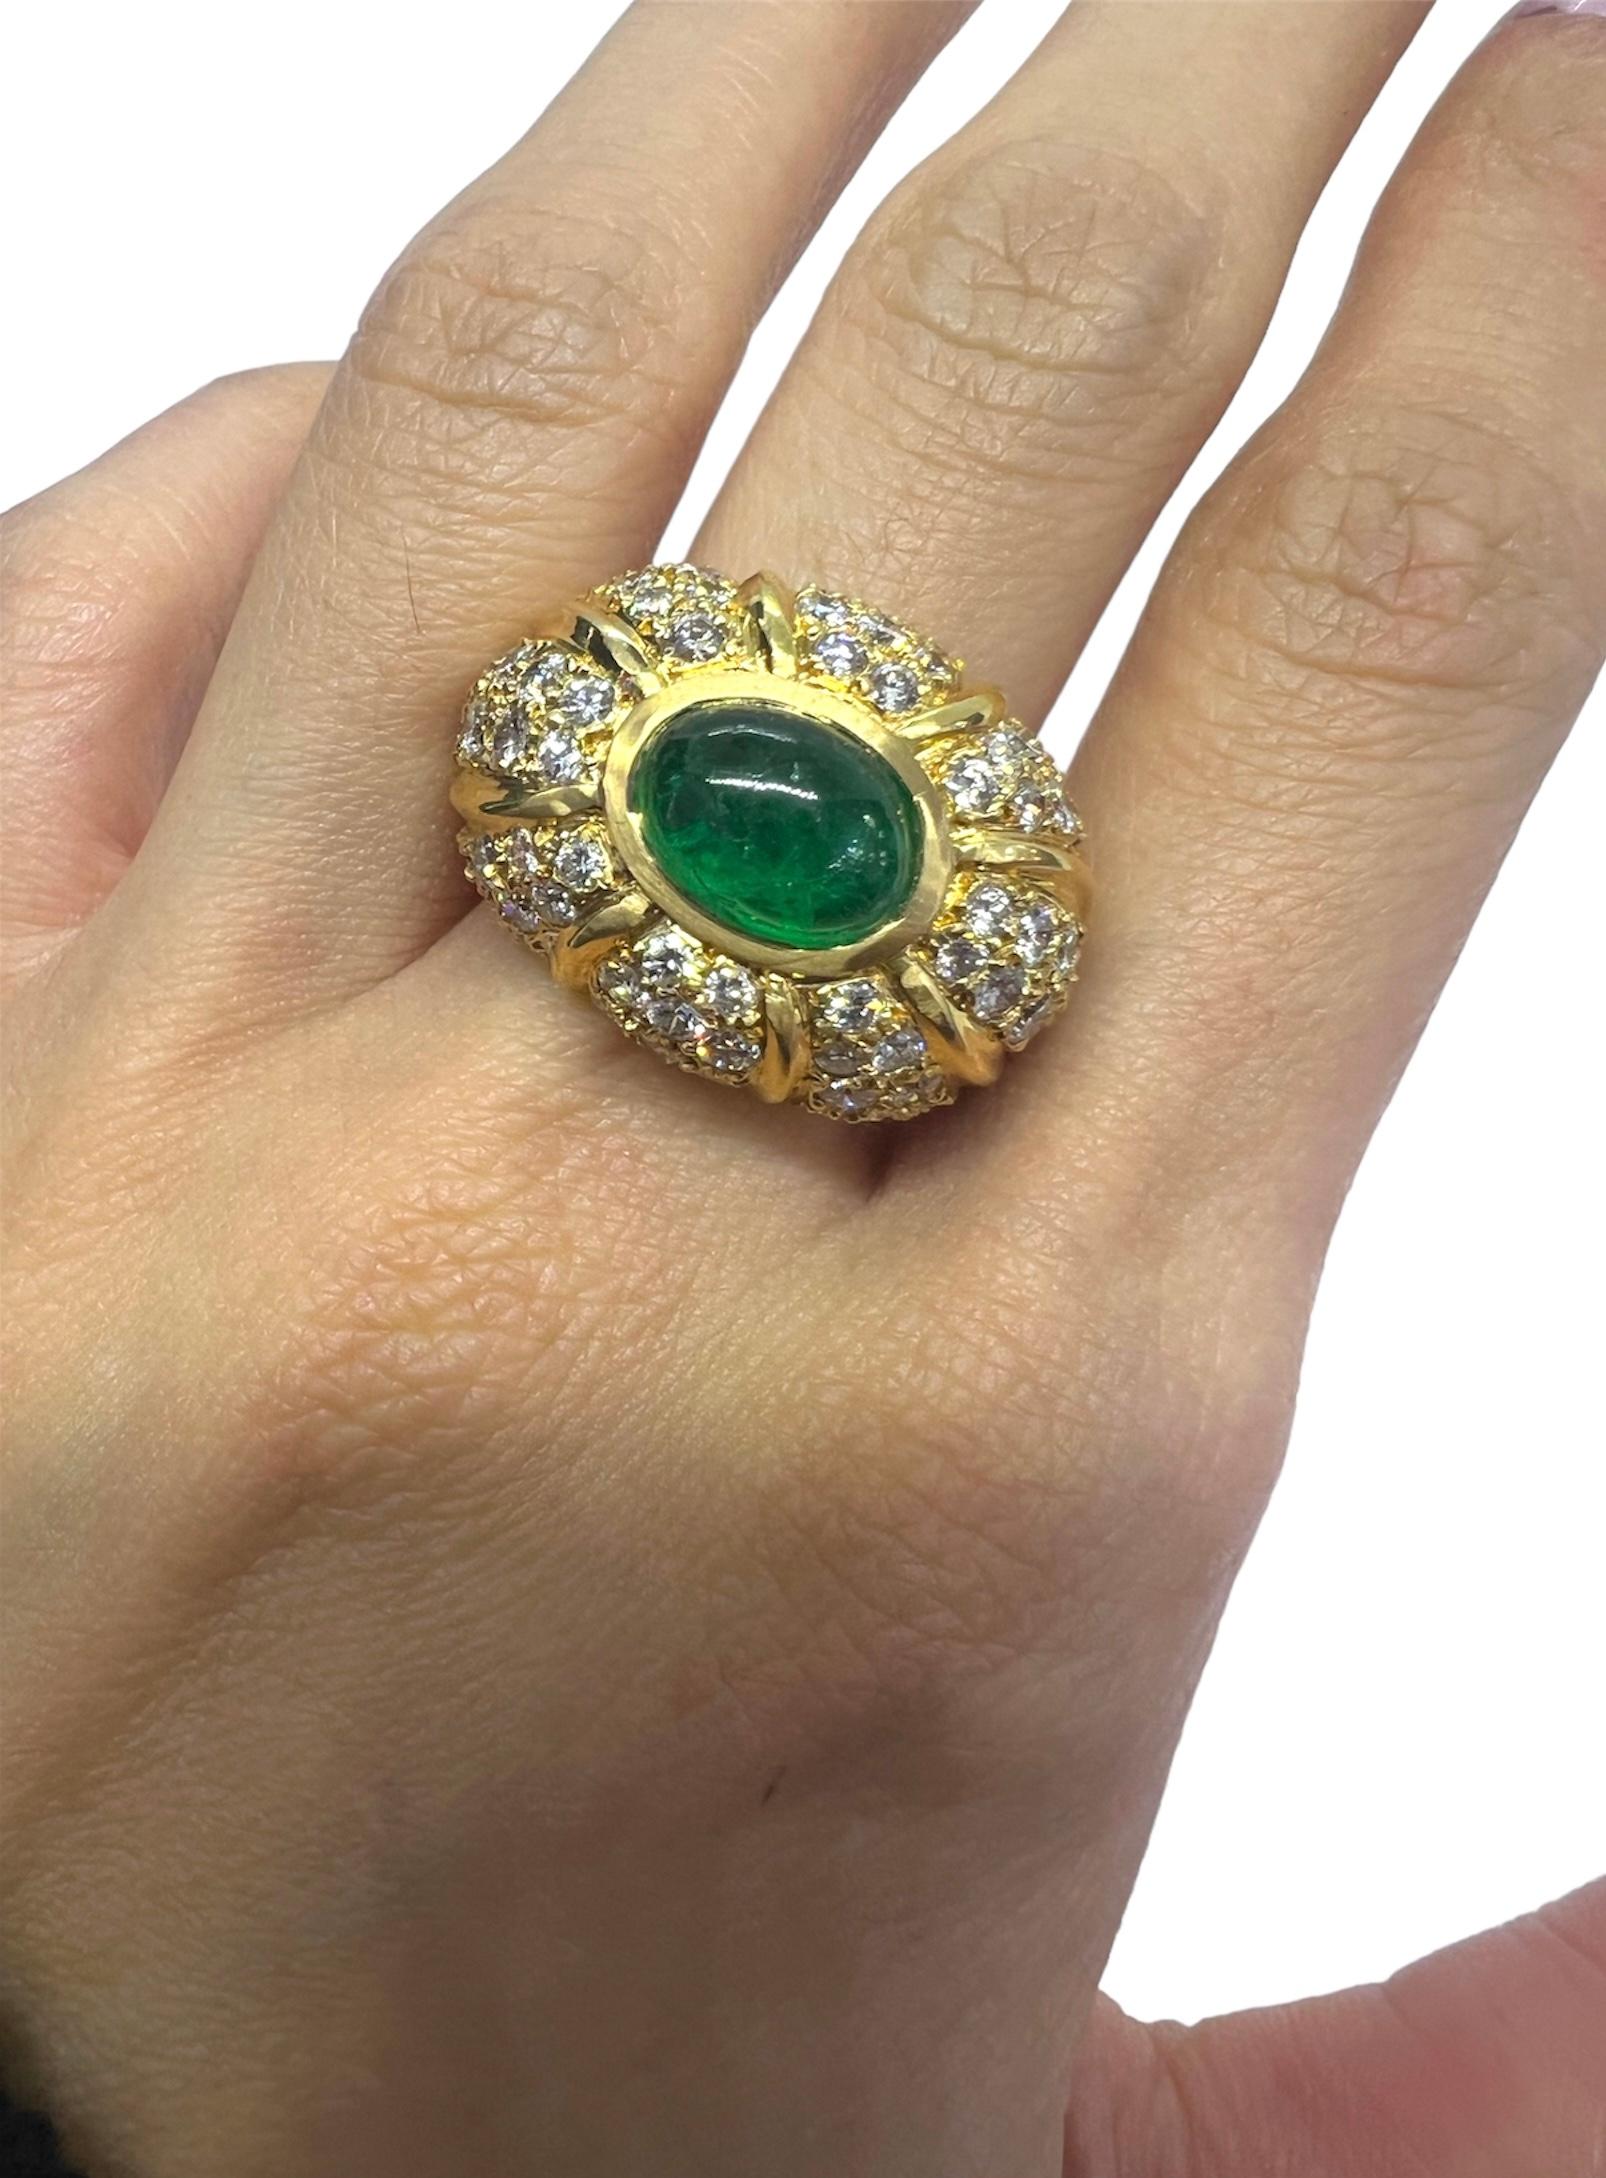 Ring aus 18 Karat Gelbgold mit Cabochon-Smaragdstein, der mit Diamanten verziert ist.

Sophia D von Joseph Dardashti LTD ist seit 35 Jahren weltweit bekannt und lässt sich vom klassischen Art-Déco-Design inspirieren, das mit modernen